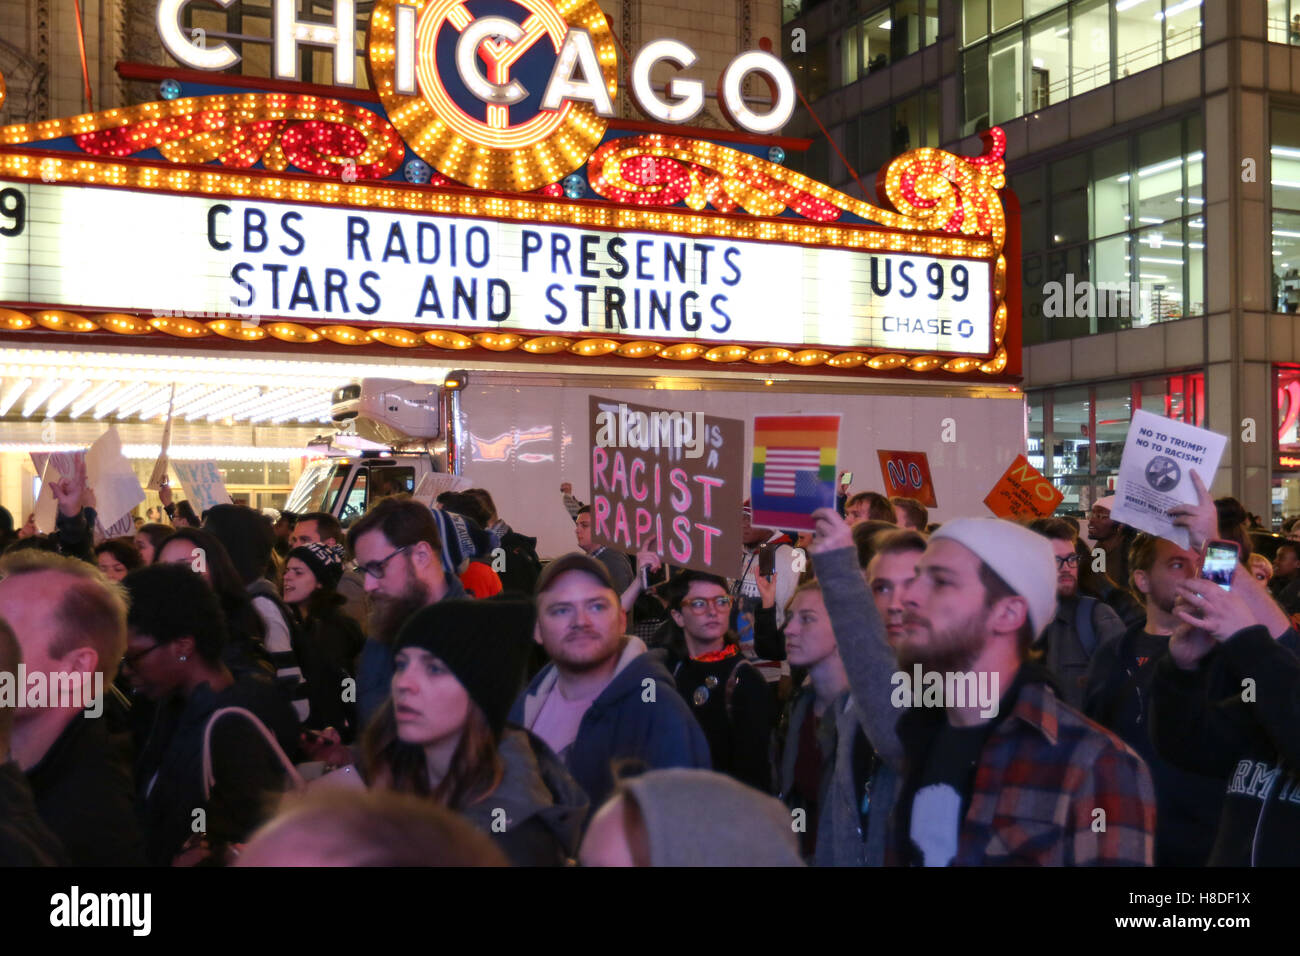 Chicago, Illinois, USA. 9. November 2016. Demonstranten protestieren gegen Präsident wählen Donald Trump auf der State Street am 9. November 2016 in Chicago, IL. Bildnachweis: Debby Wong/Alamy Live-Nachrichten Stockfoto